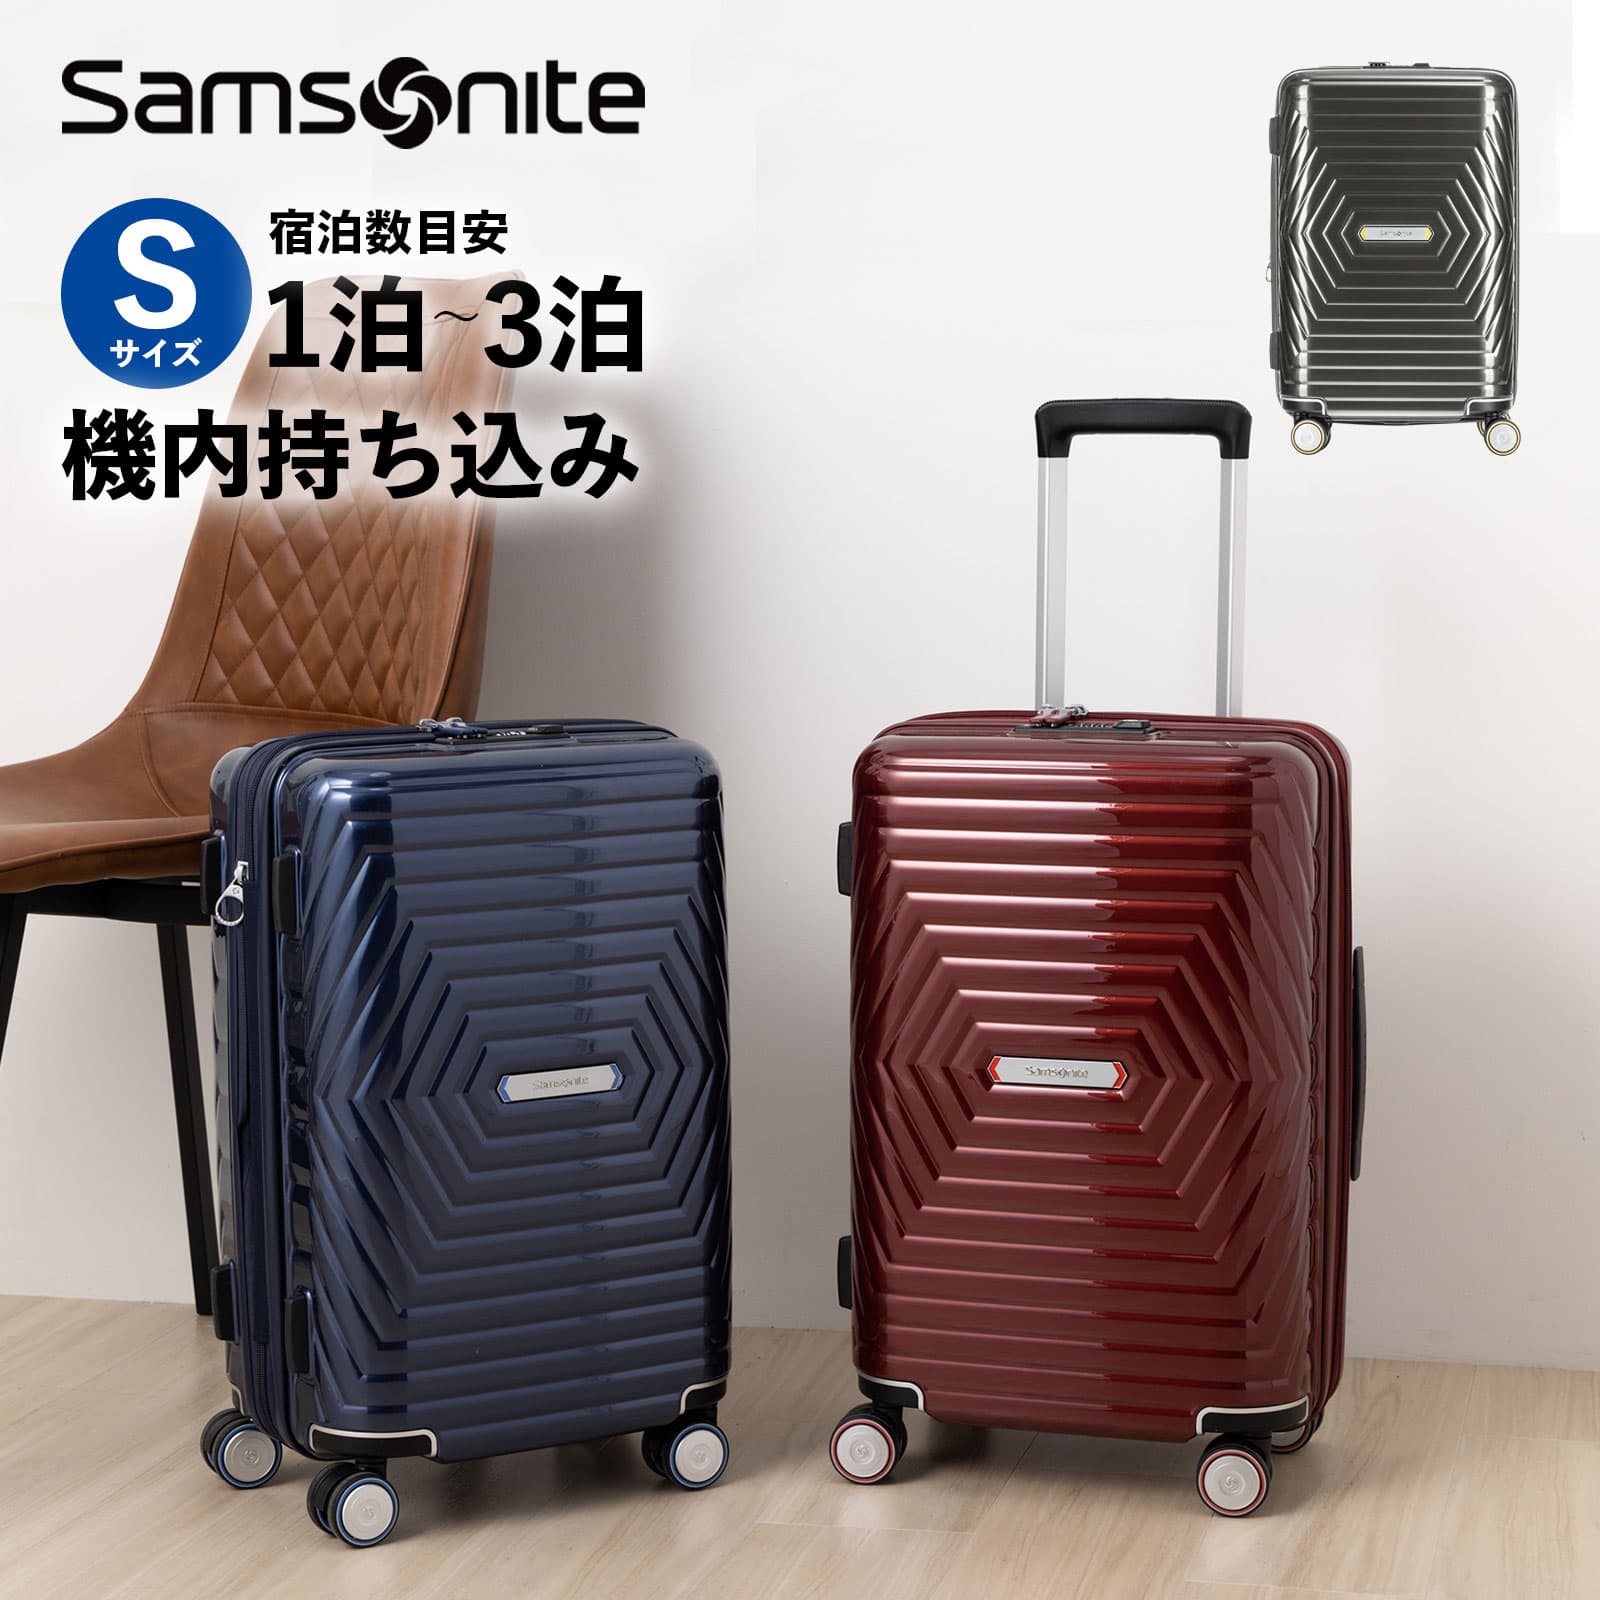 スーツケース 機内持ち込み Sサイズ 税込 サムソナイト Samsonite メーカー保証付 送料無料 アストラ スピナー55 ハードケース 旅行 トラベル キャリーバッグ 出張 超軽量 セットアップ ASTRA 158cm以内 容量拡張 キャリーケース